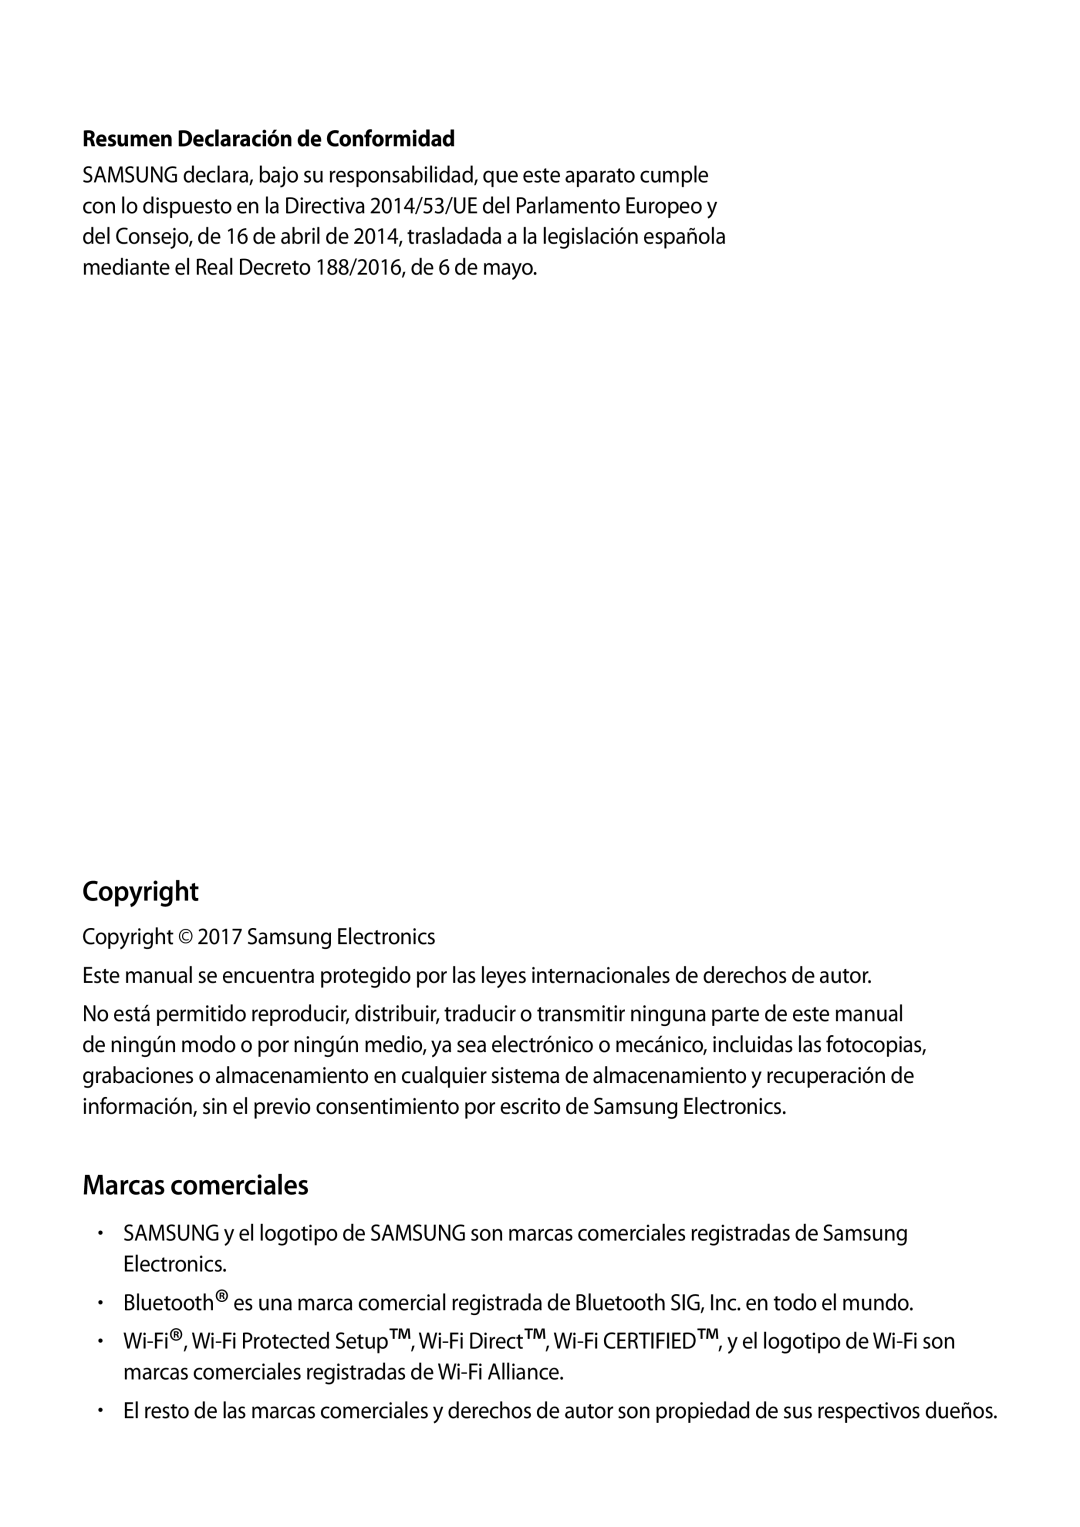 Samsung SM-R600NZKAPHE, SM-R600NZBAPHE manual Copyright, Marcas comerciales, Resumen Declaración de Conformidad 